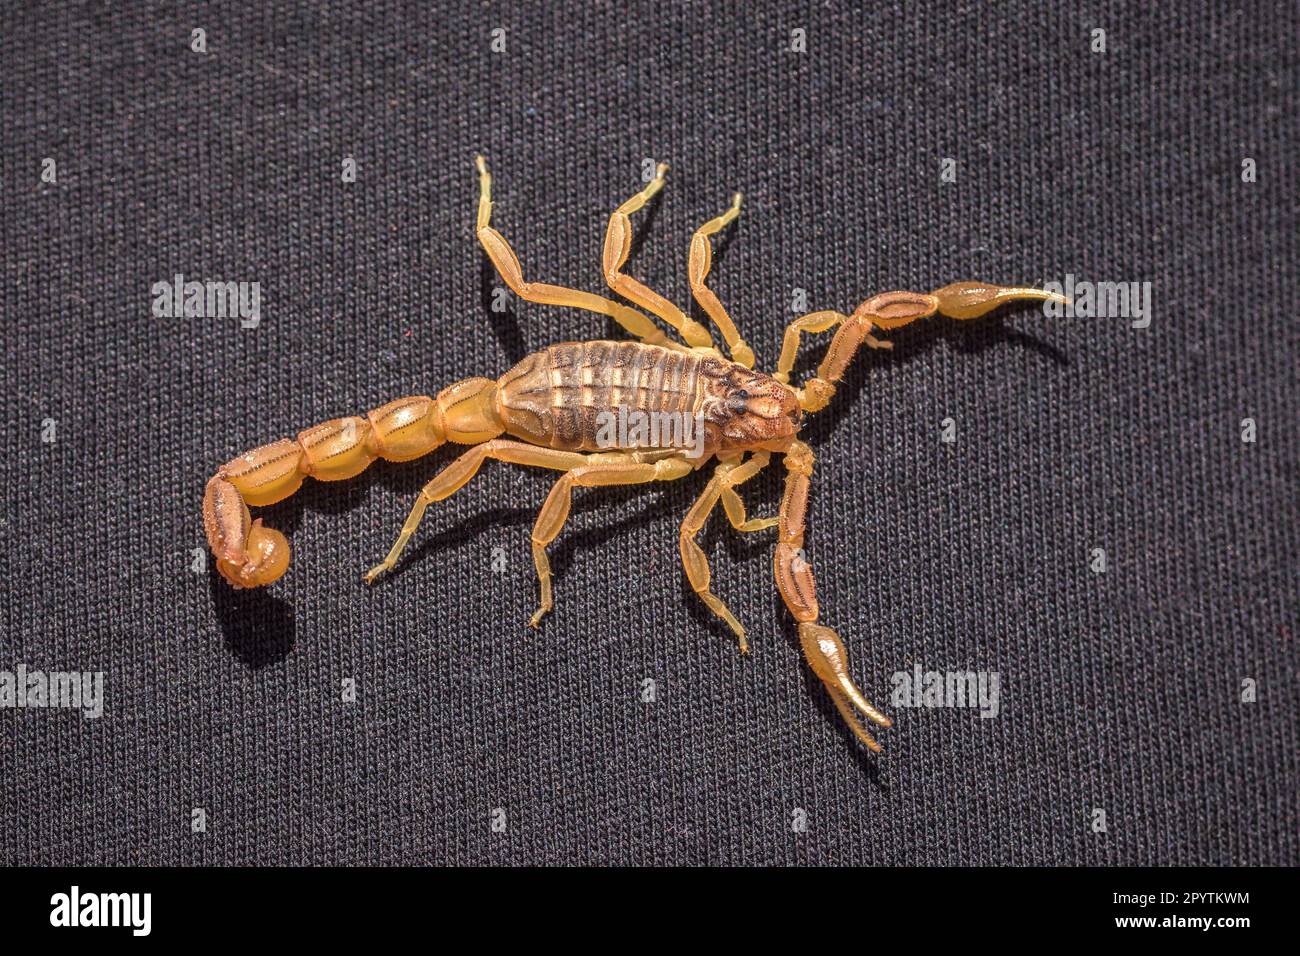 Scorpion in primo piano su tessuto nero, scorpione marocchino Buthus mardochei Foto Stock